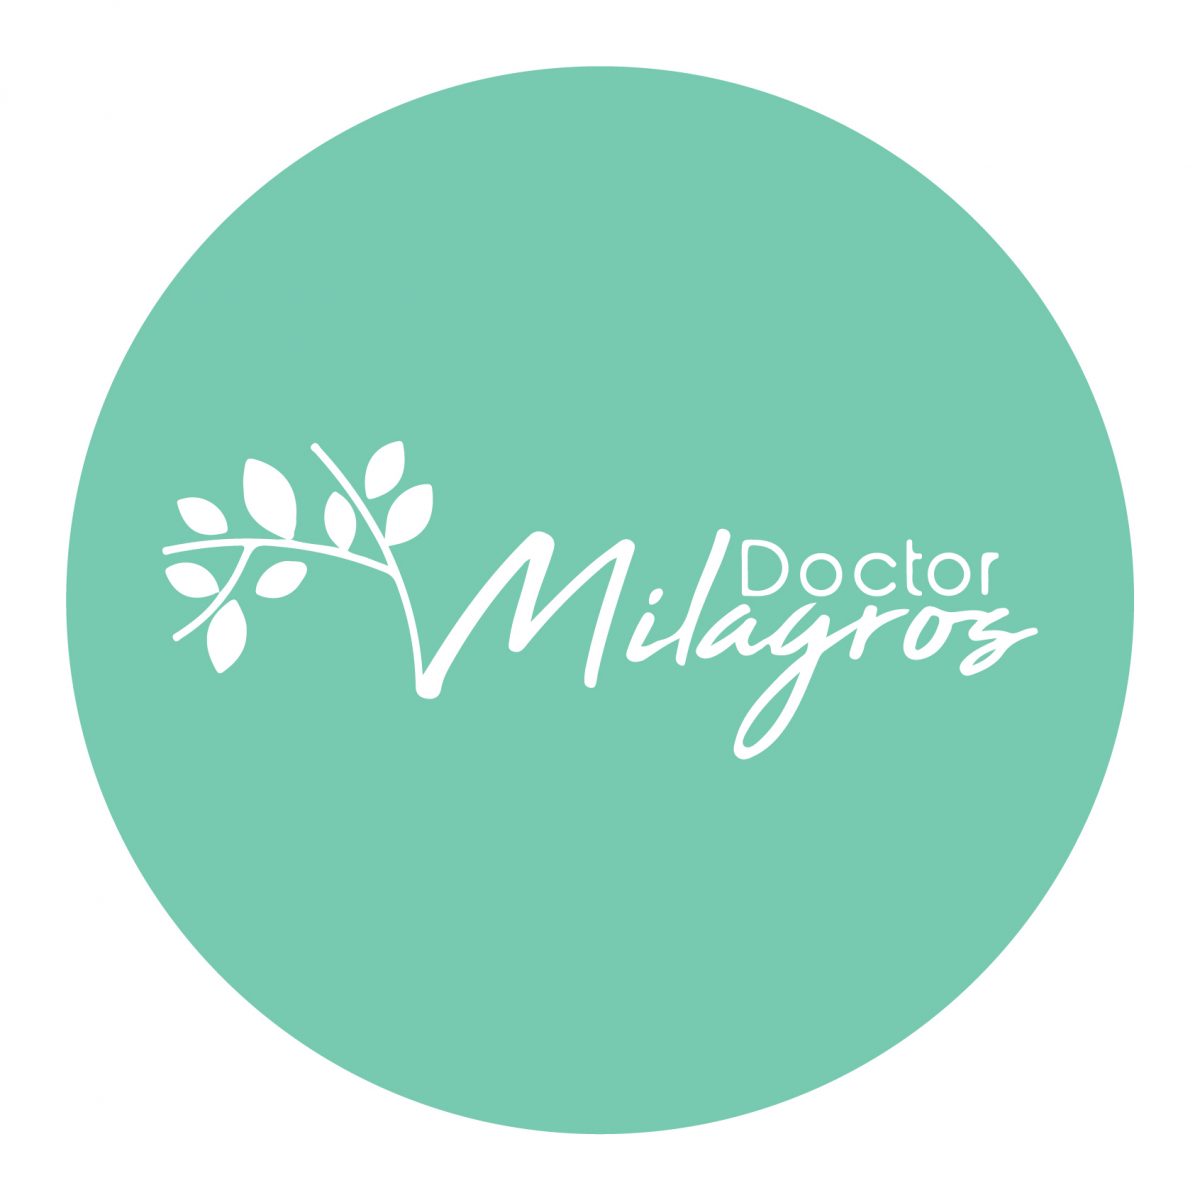 DoctorMilagros logo